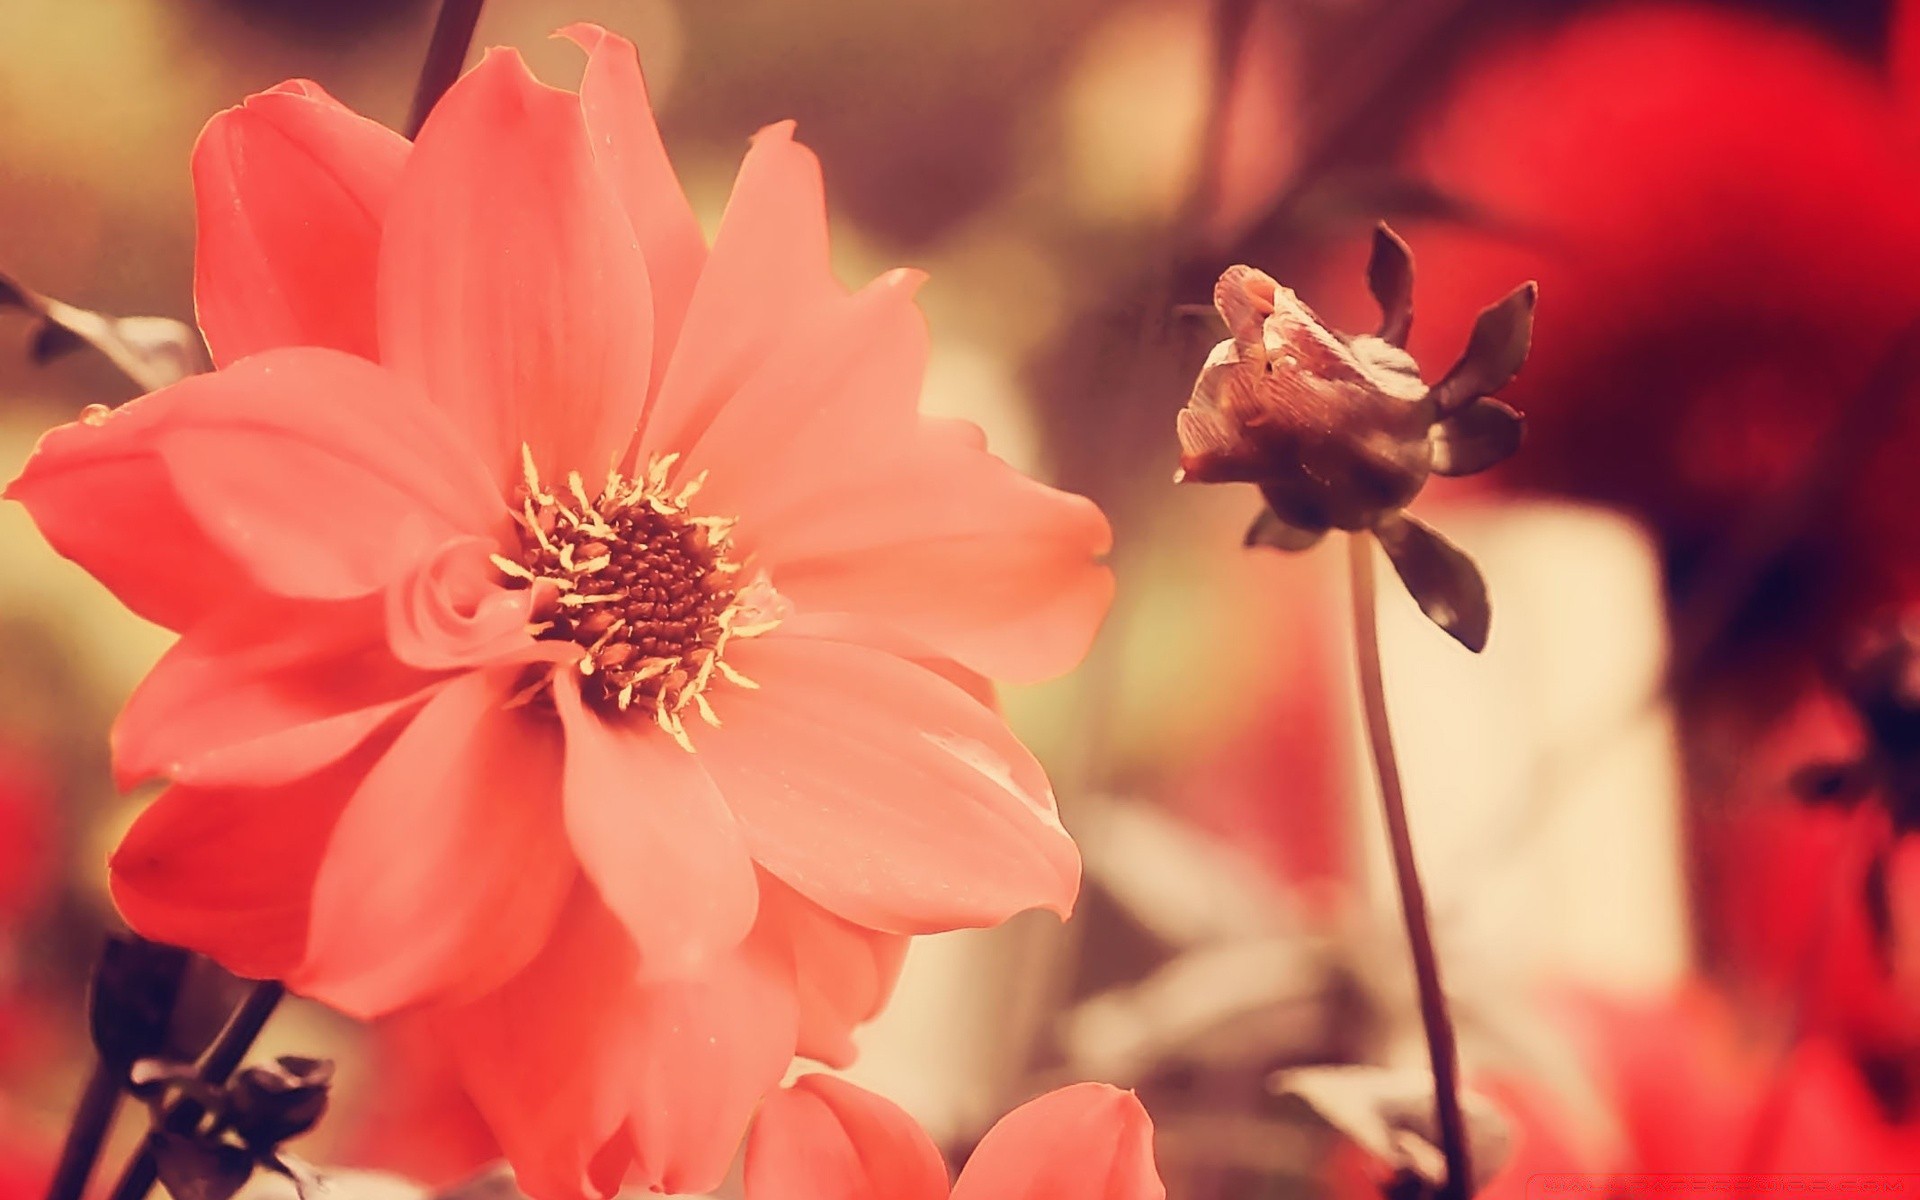 винтаж цветок природа любовь флора роза романтика лист лепесток сад романтический